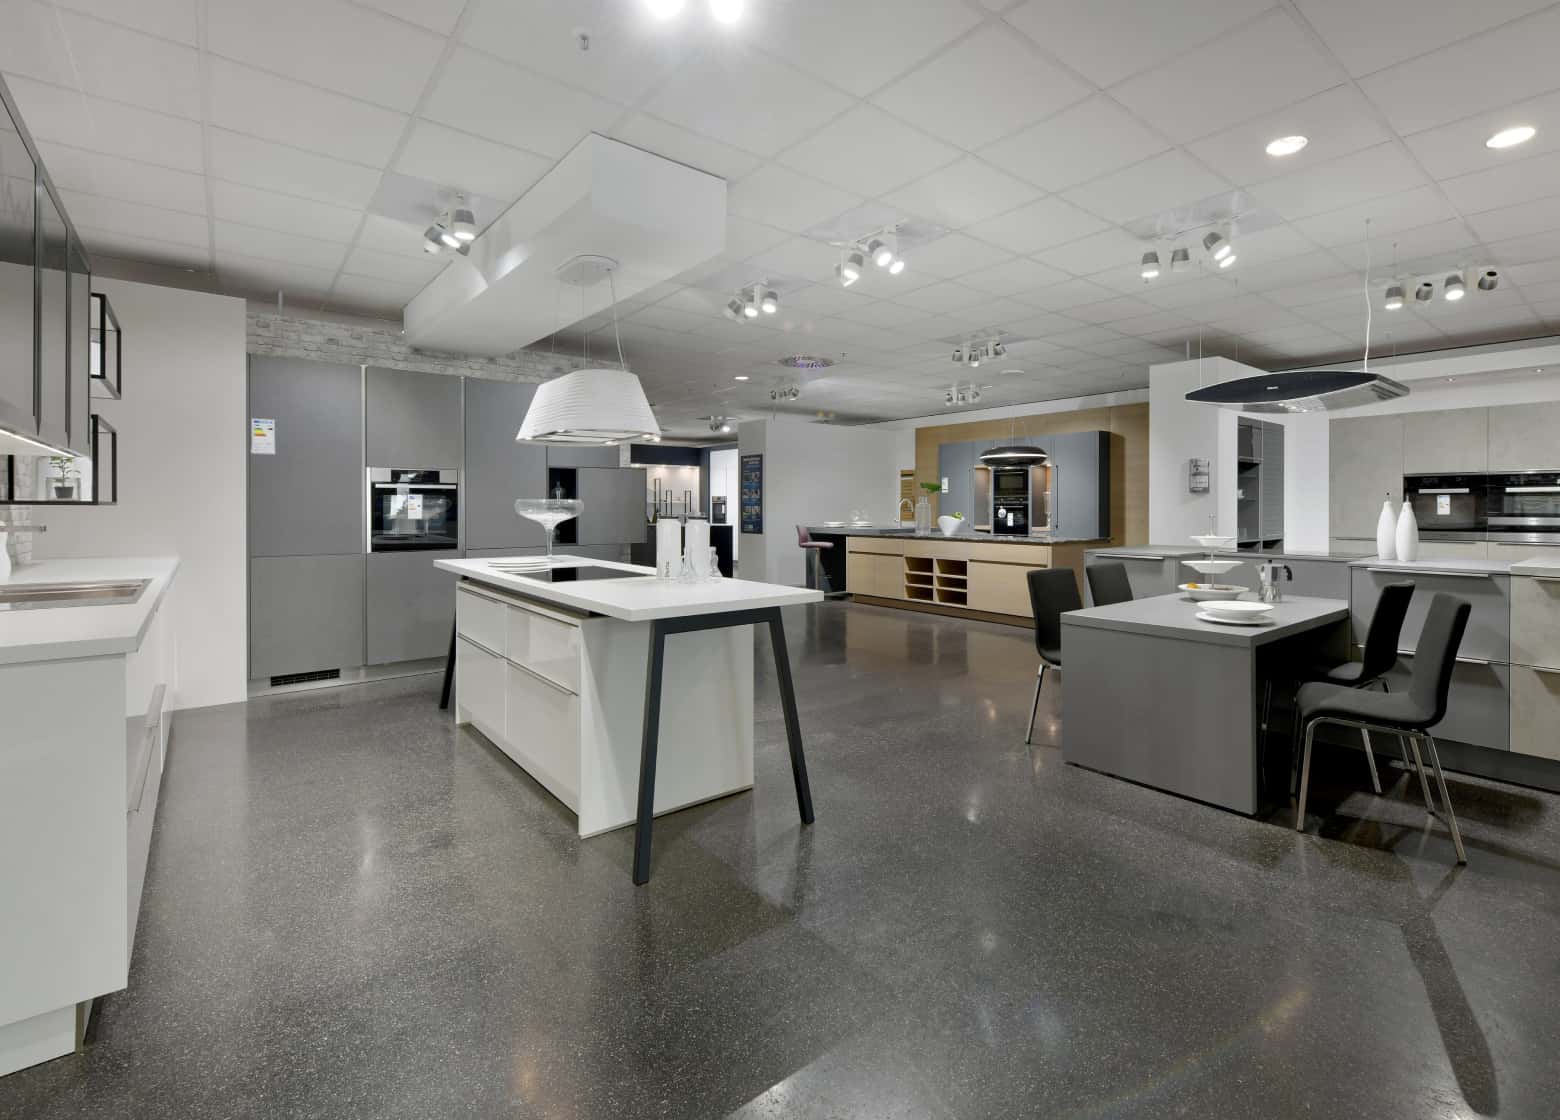 MEDA Köln-Marsdorf Innenansicht große Ausstellungsfläche mit modernen Designerküchen